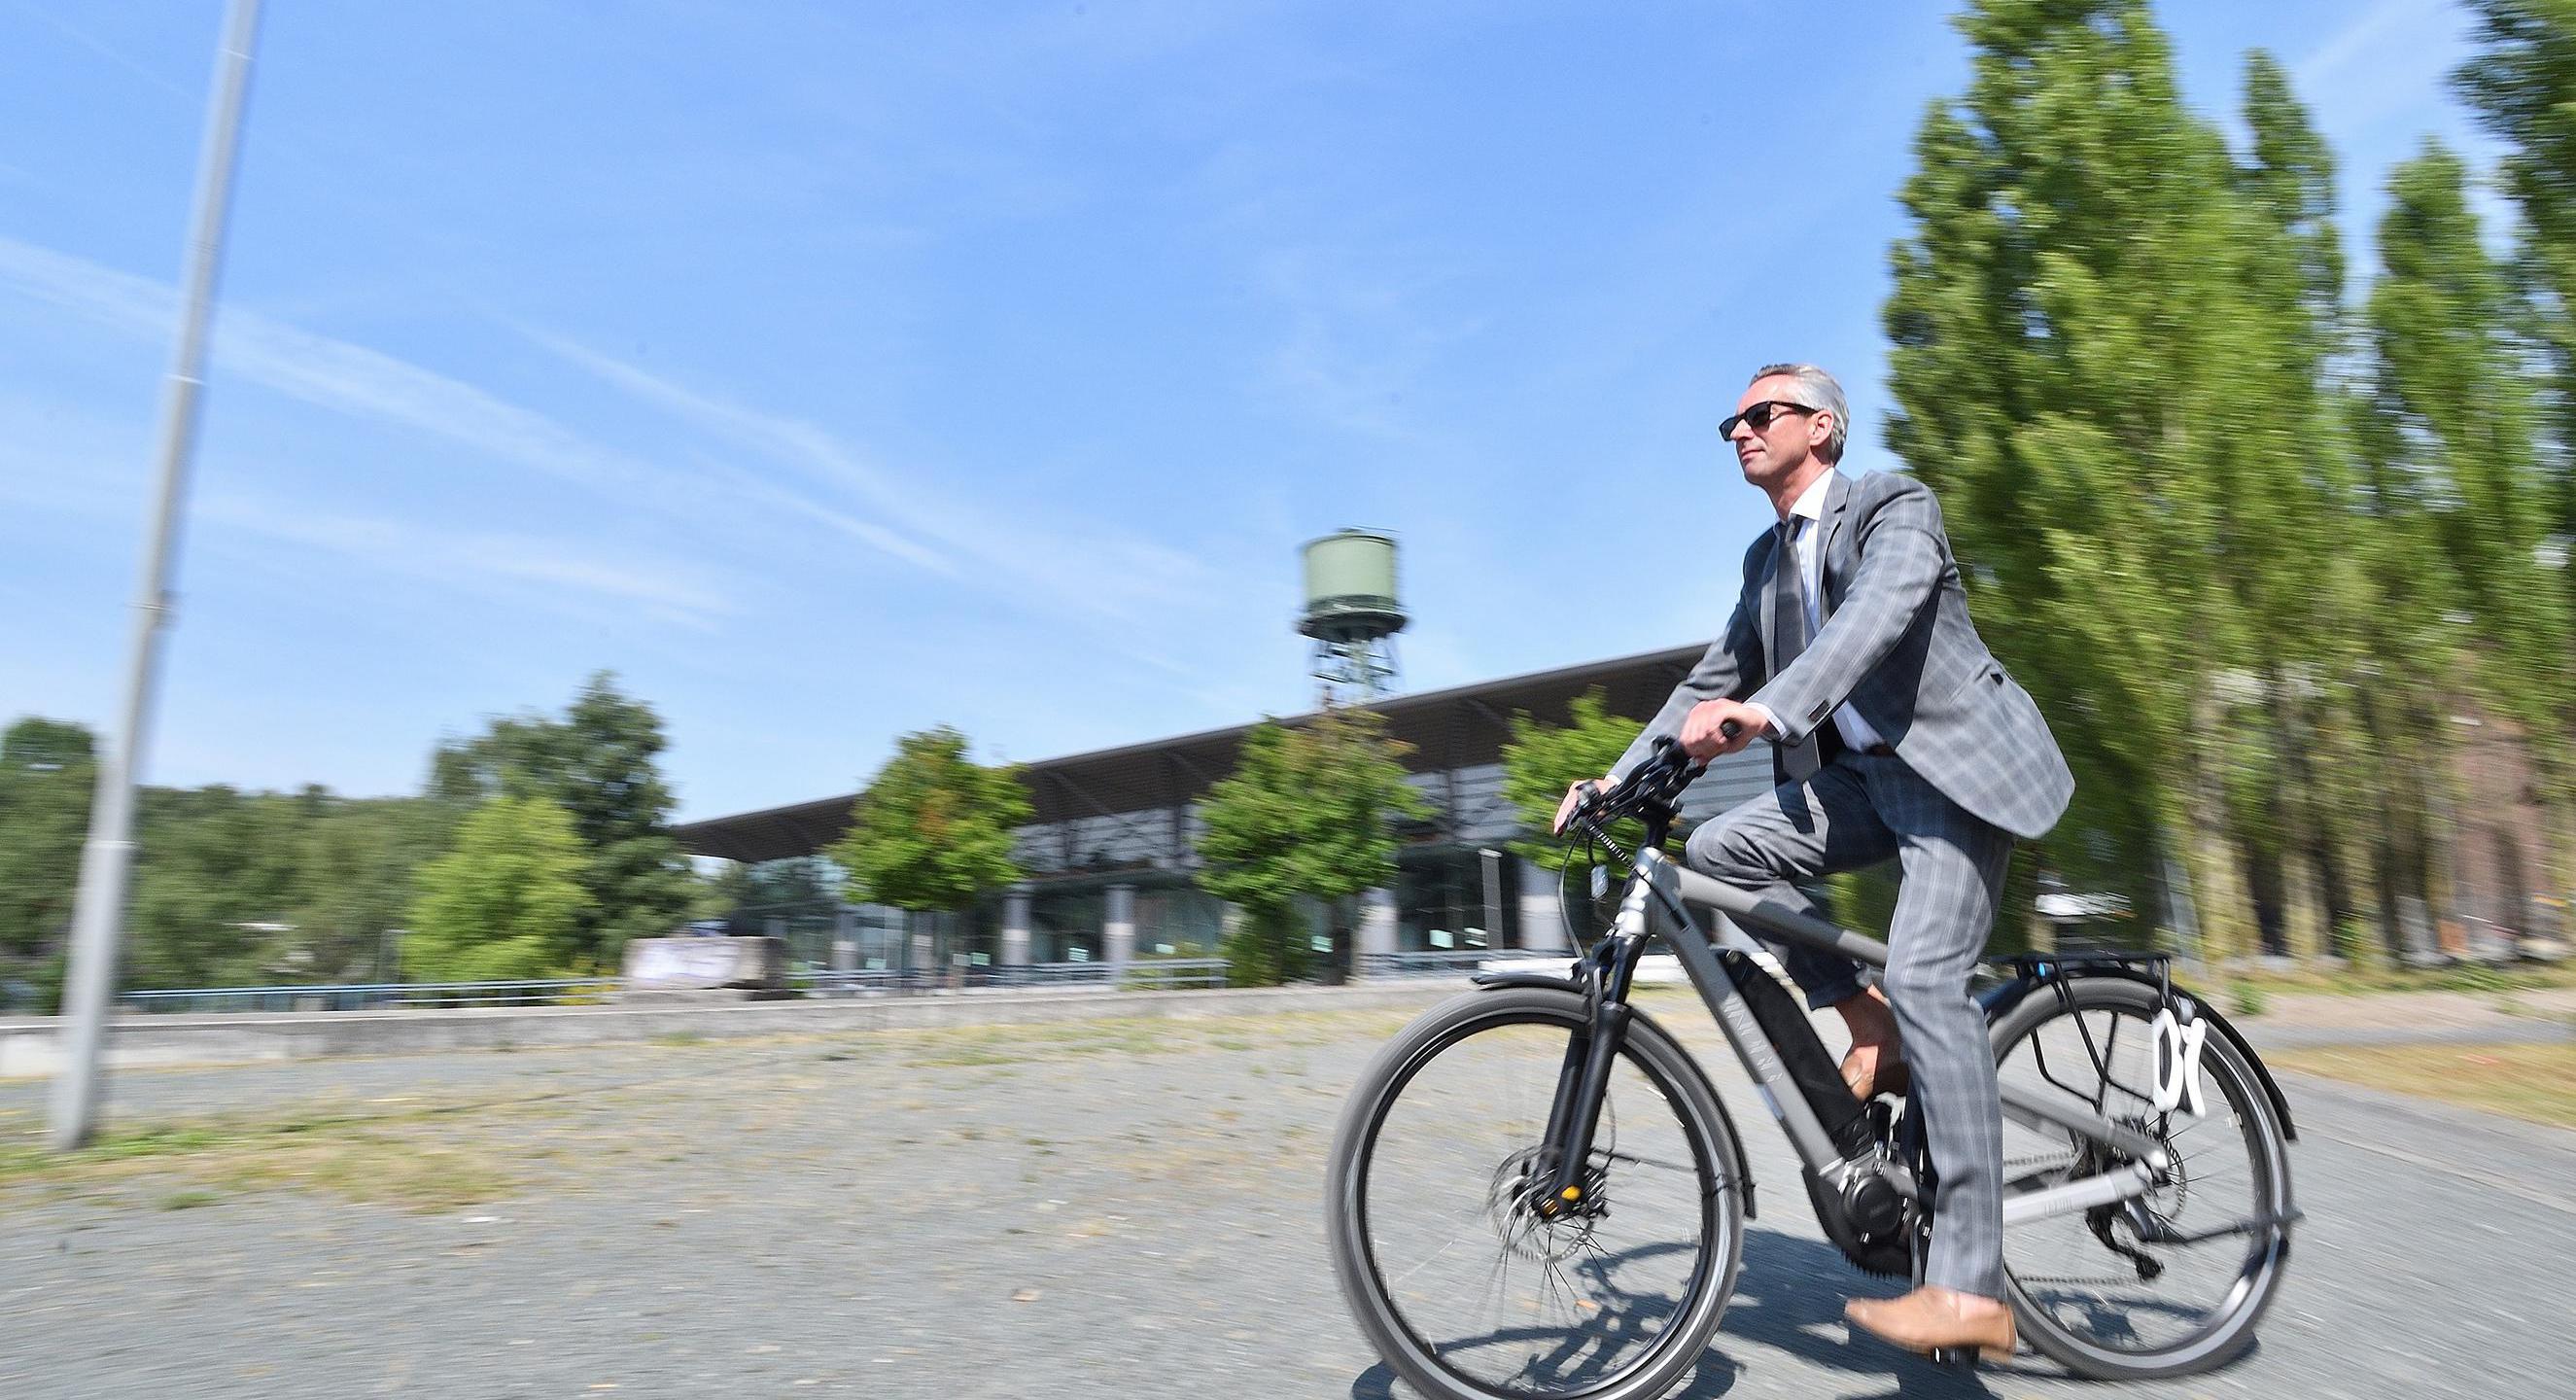 Industriekultur im Ruhrgebiet per Rad entdecken